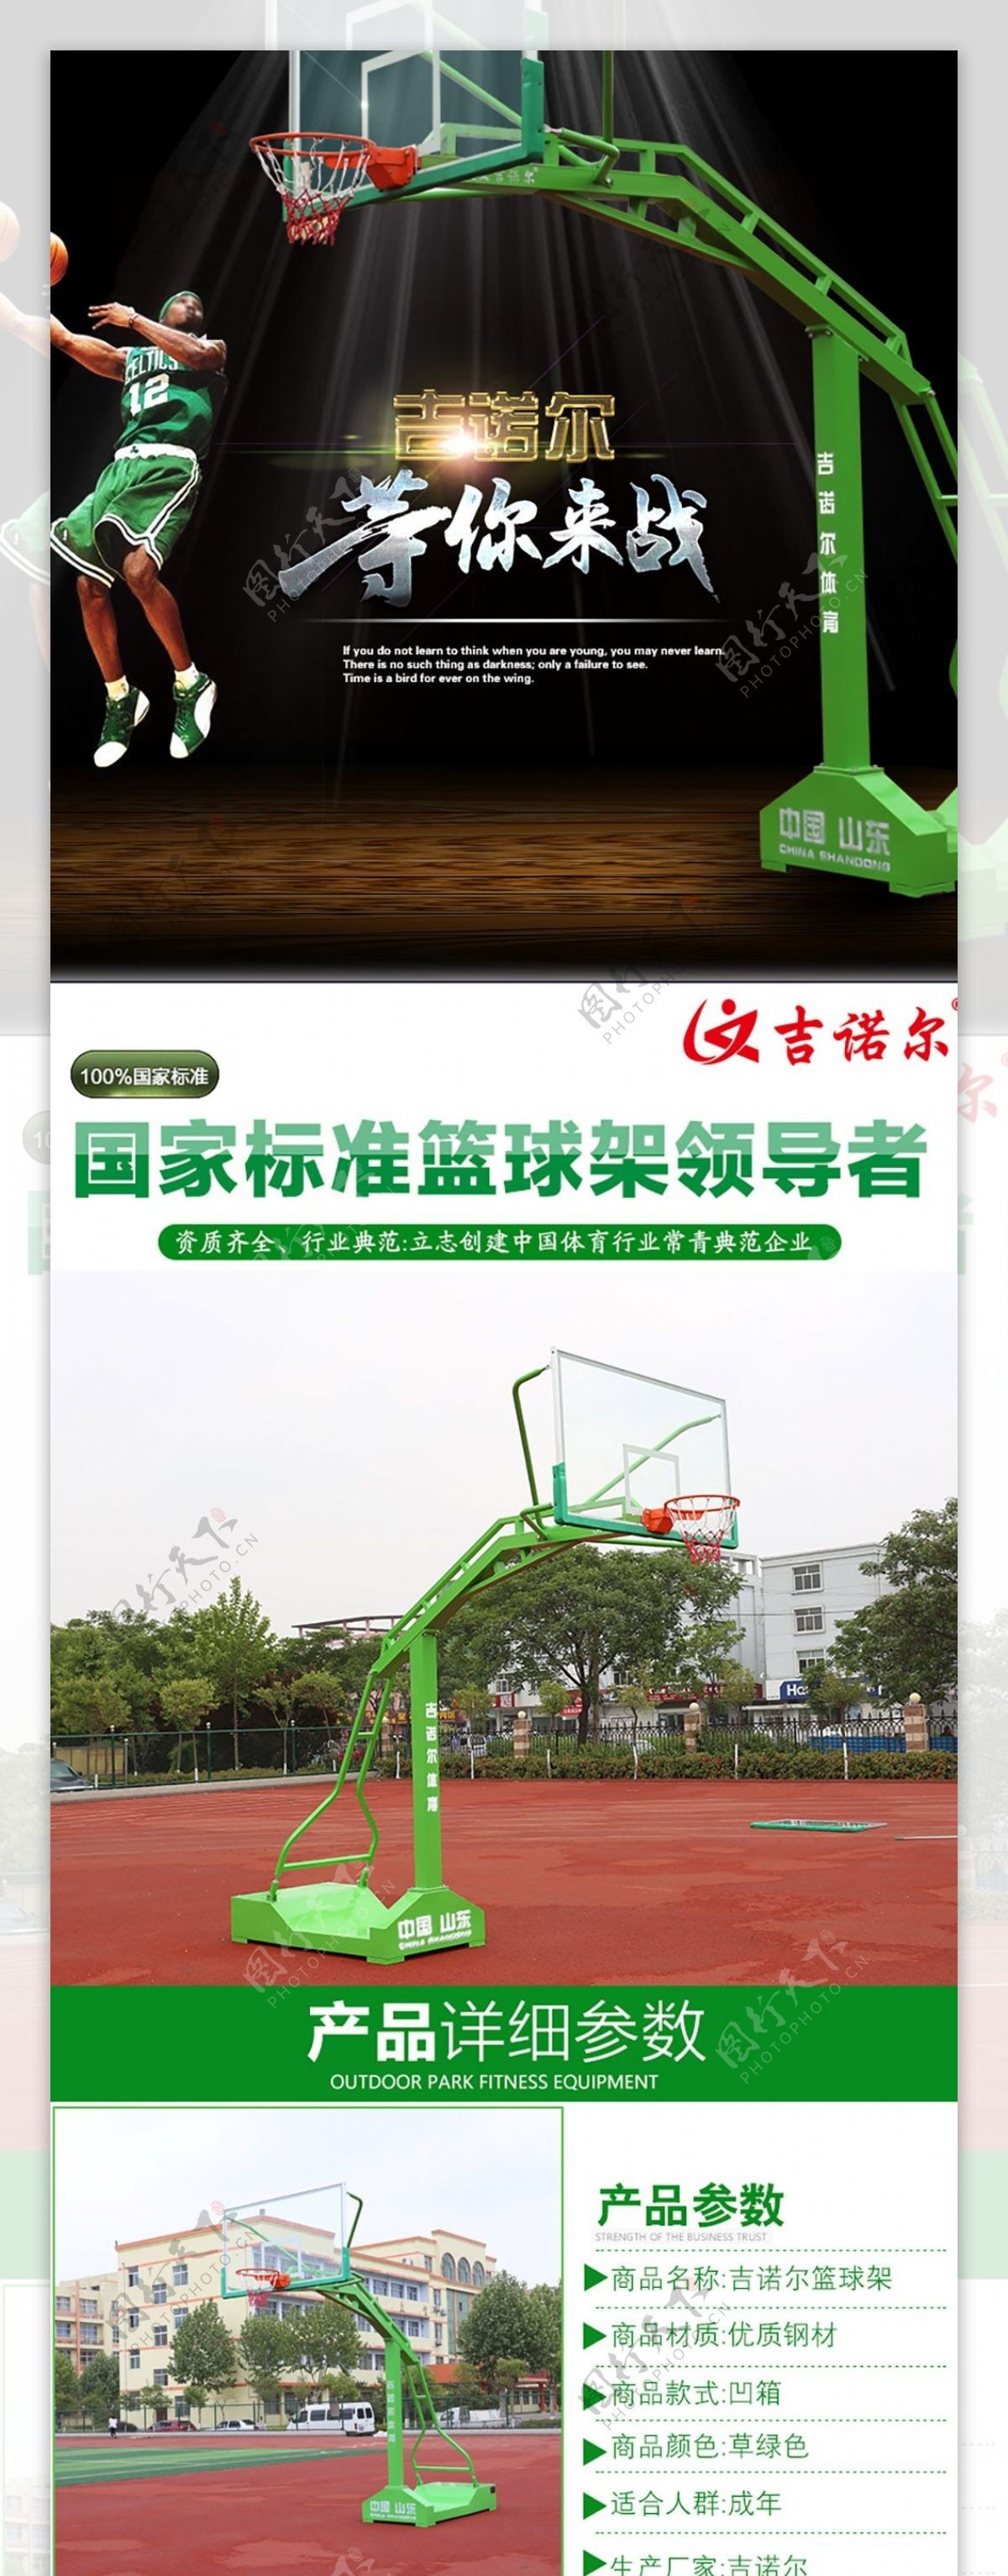 成人篮球架体育用品健身器材户外运动篮球架